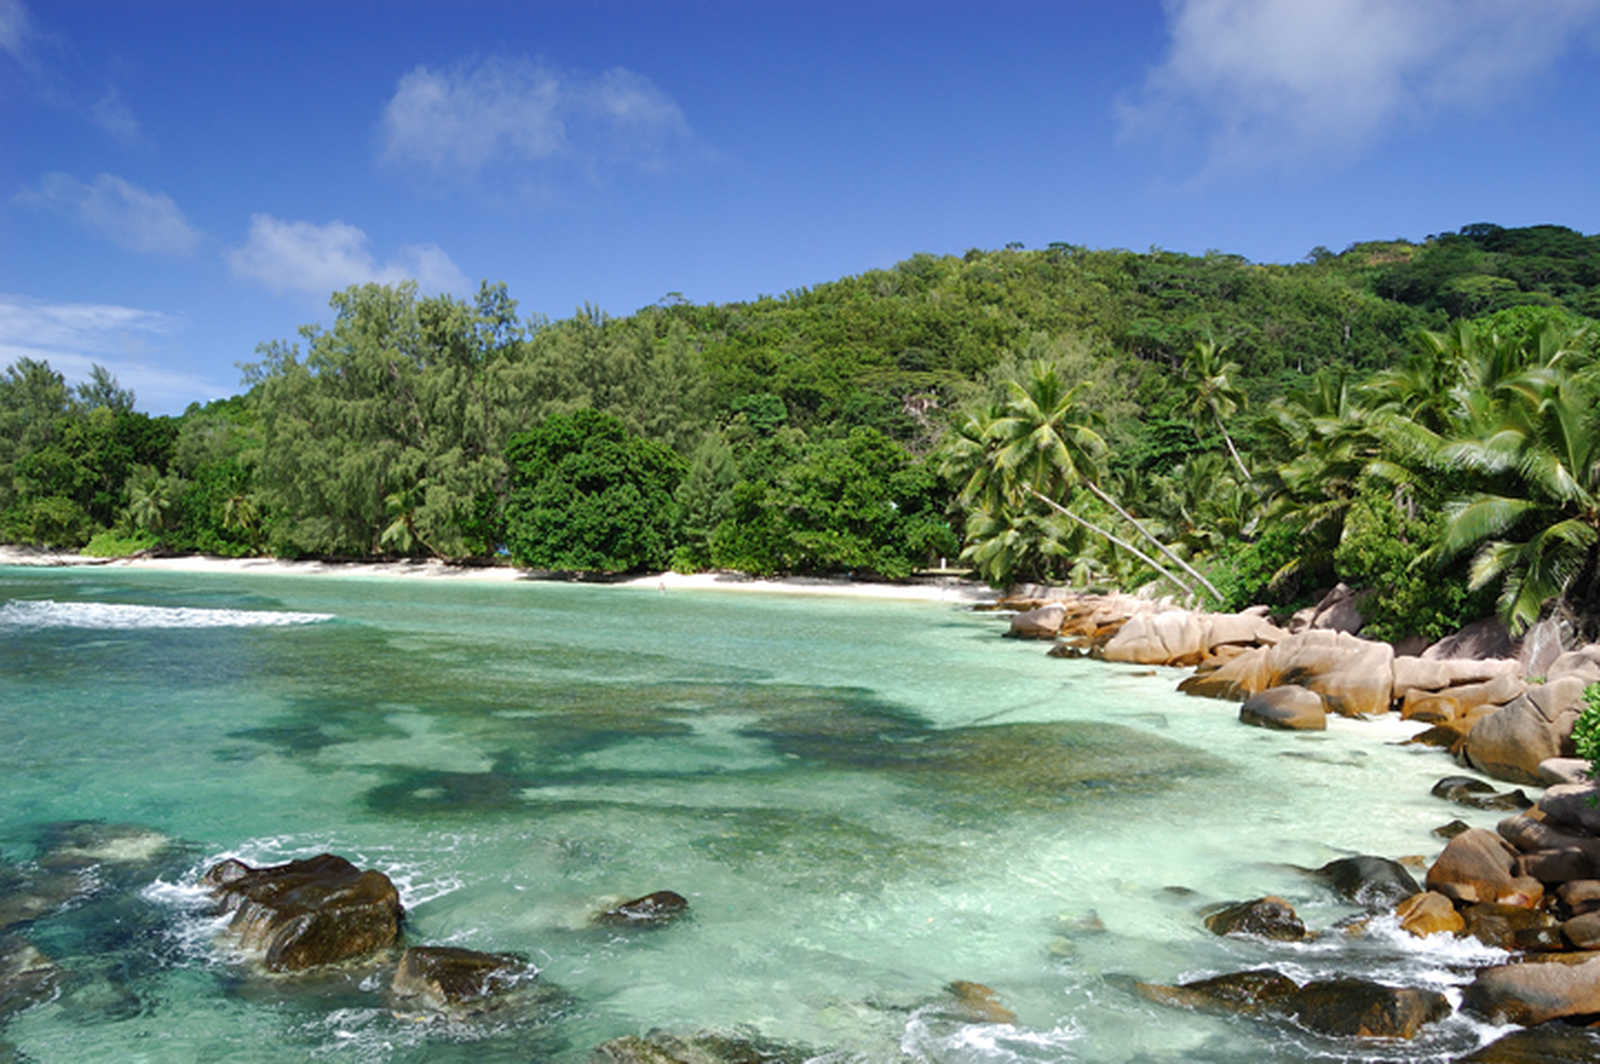 Image D'île en île aux Seychelles